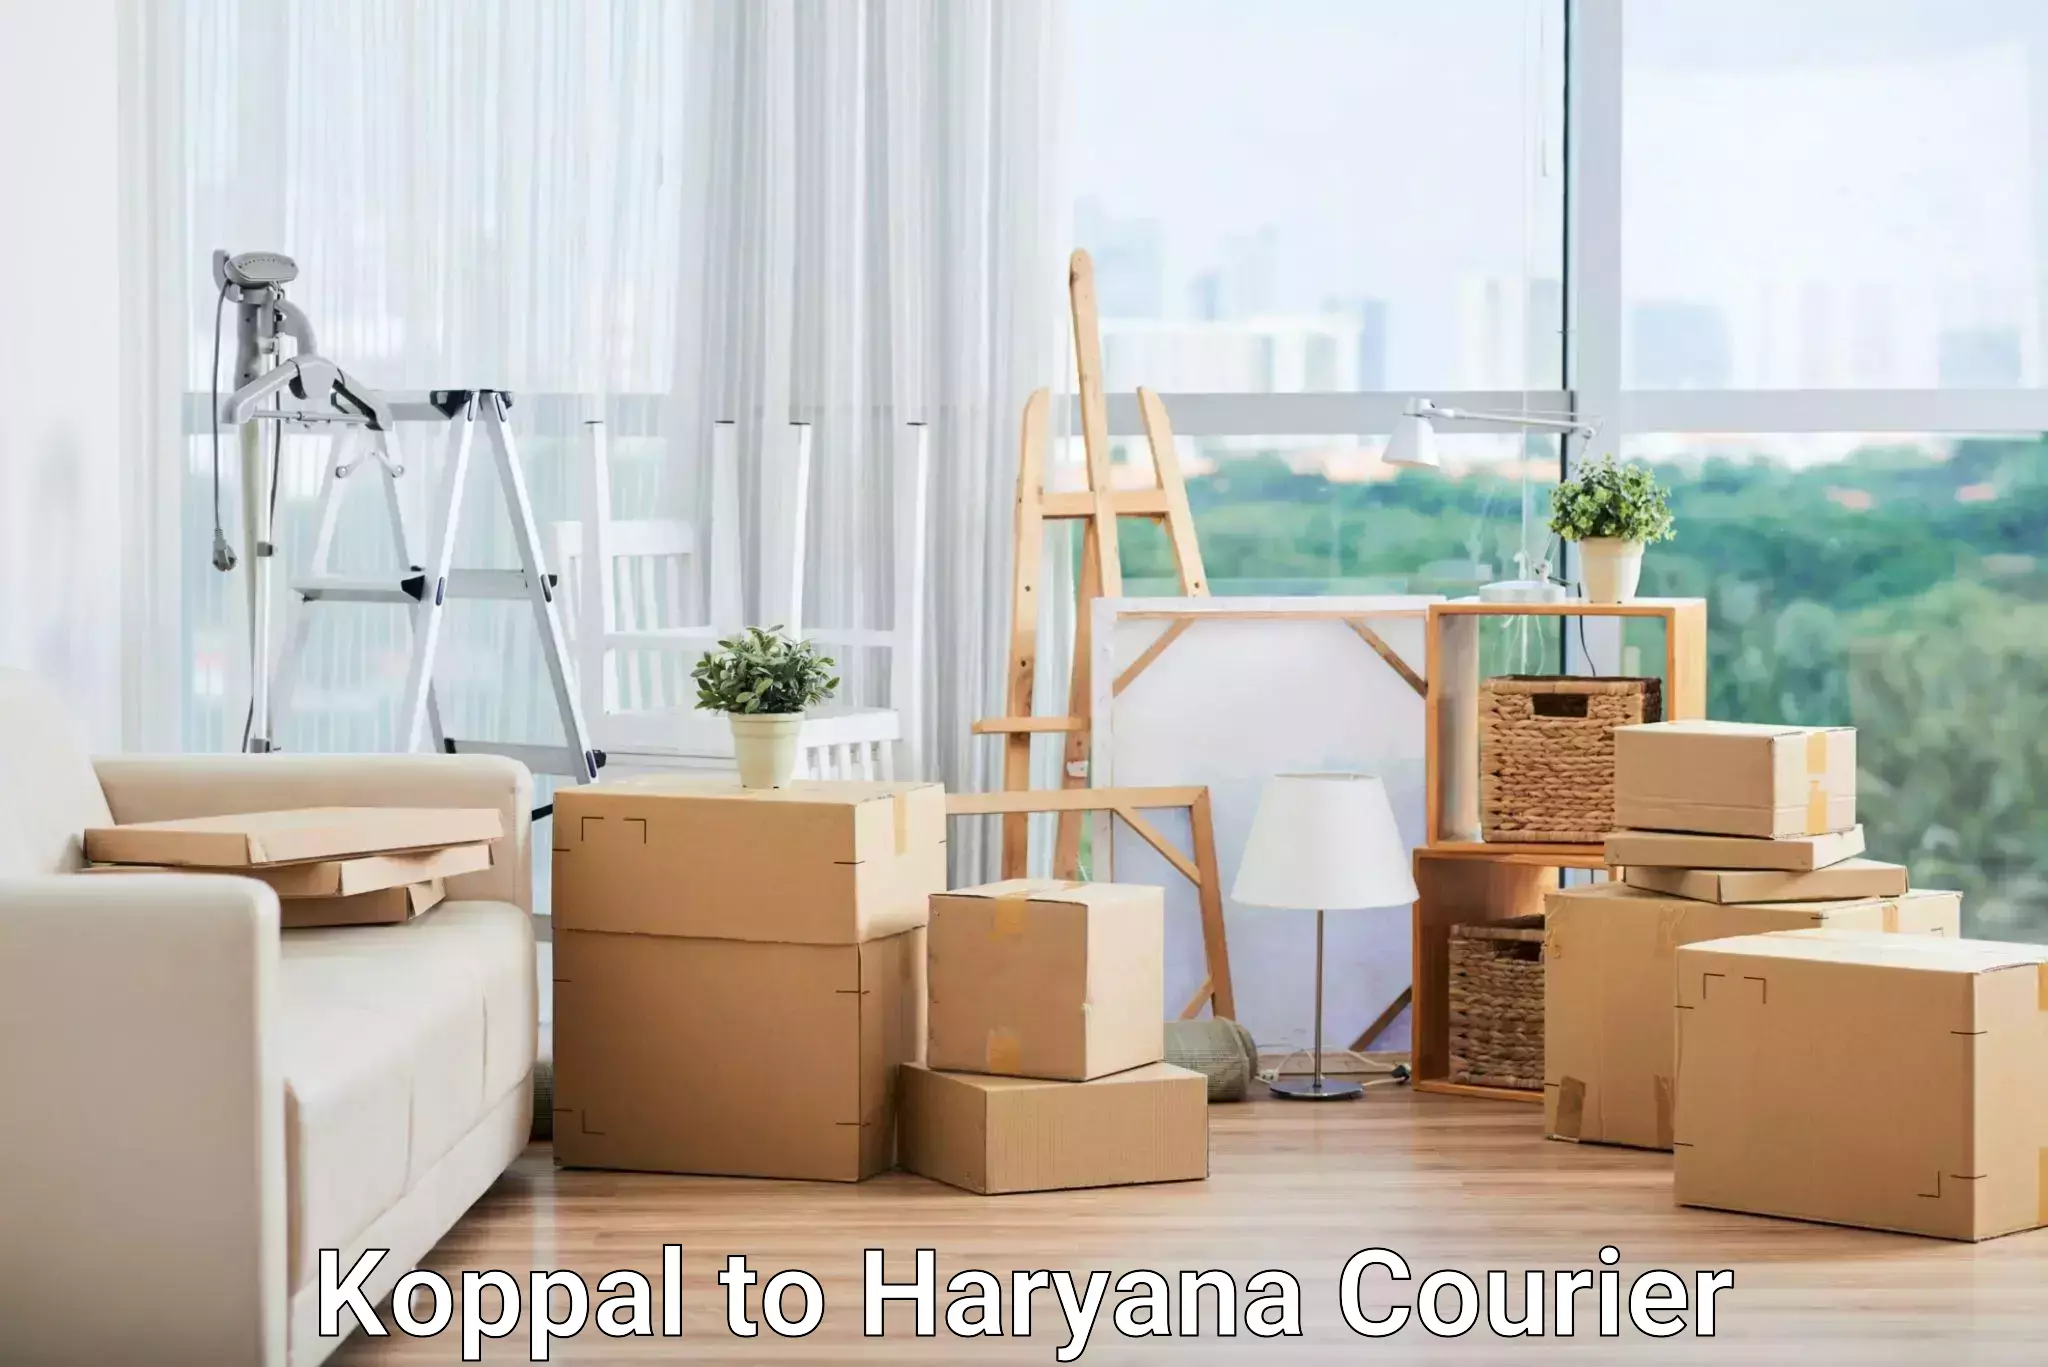 Express package handling Koppal to Haryana